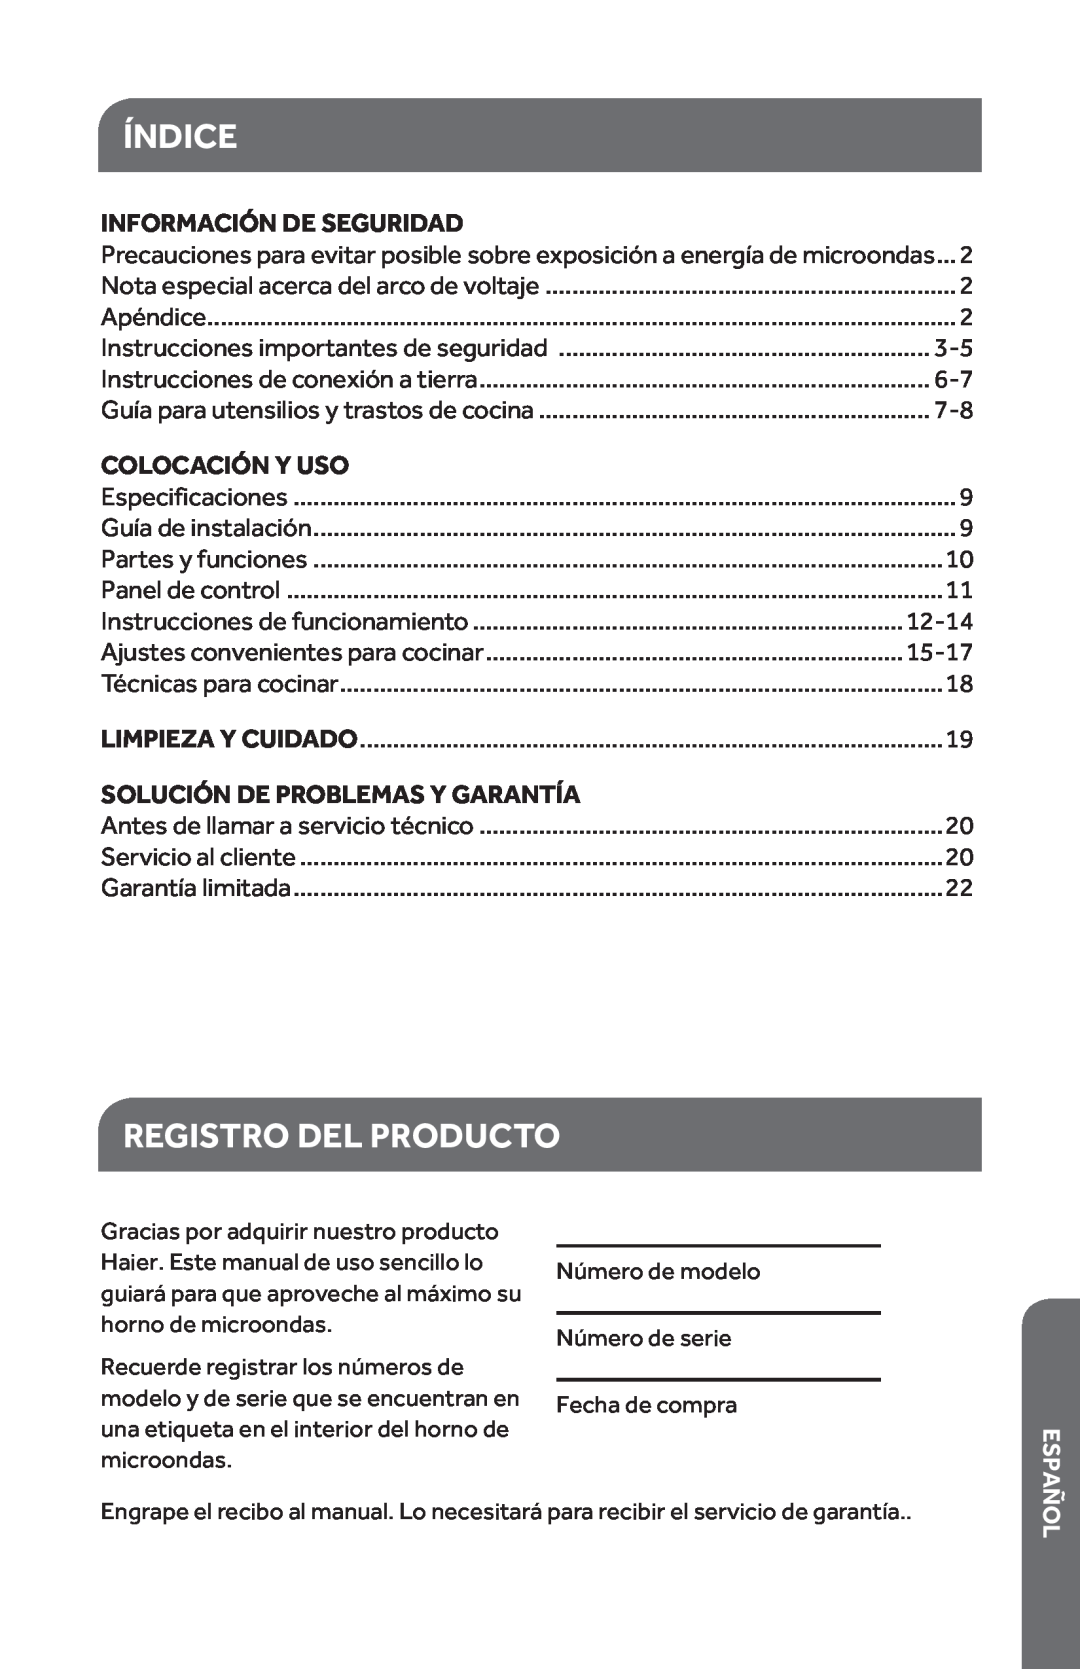 Haier HMC1035SESS user manual Índice, Registro Del Producto, Información De Seguridad, Colocación Y Uso, 12-14, 15-17 